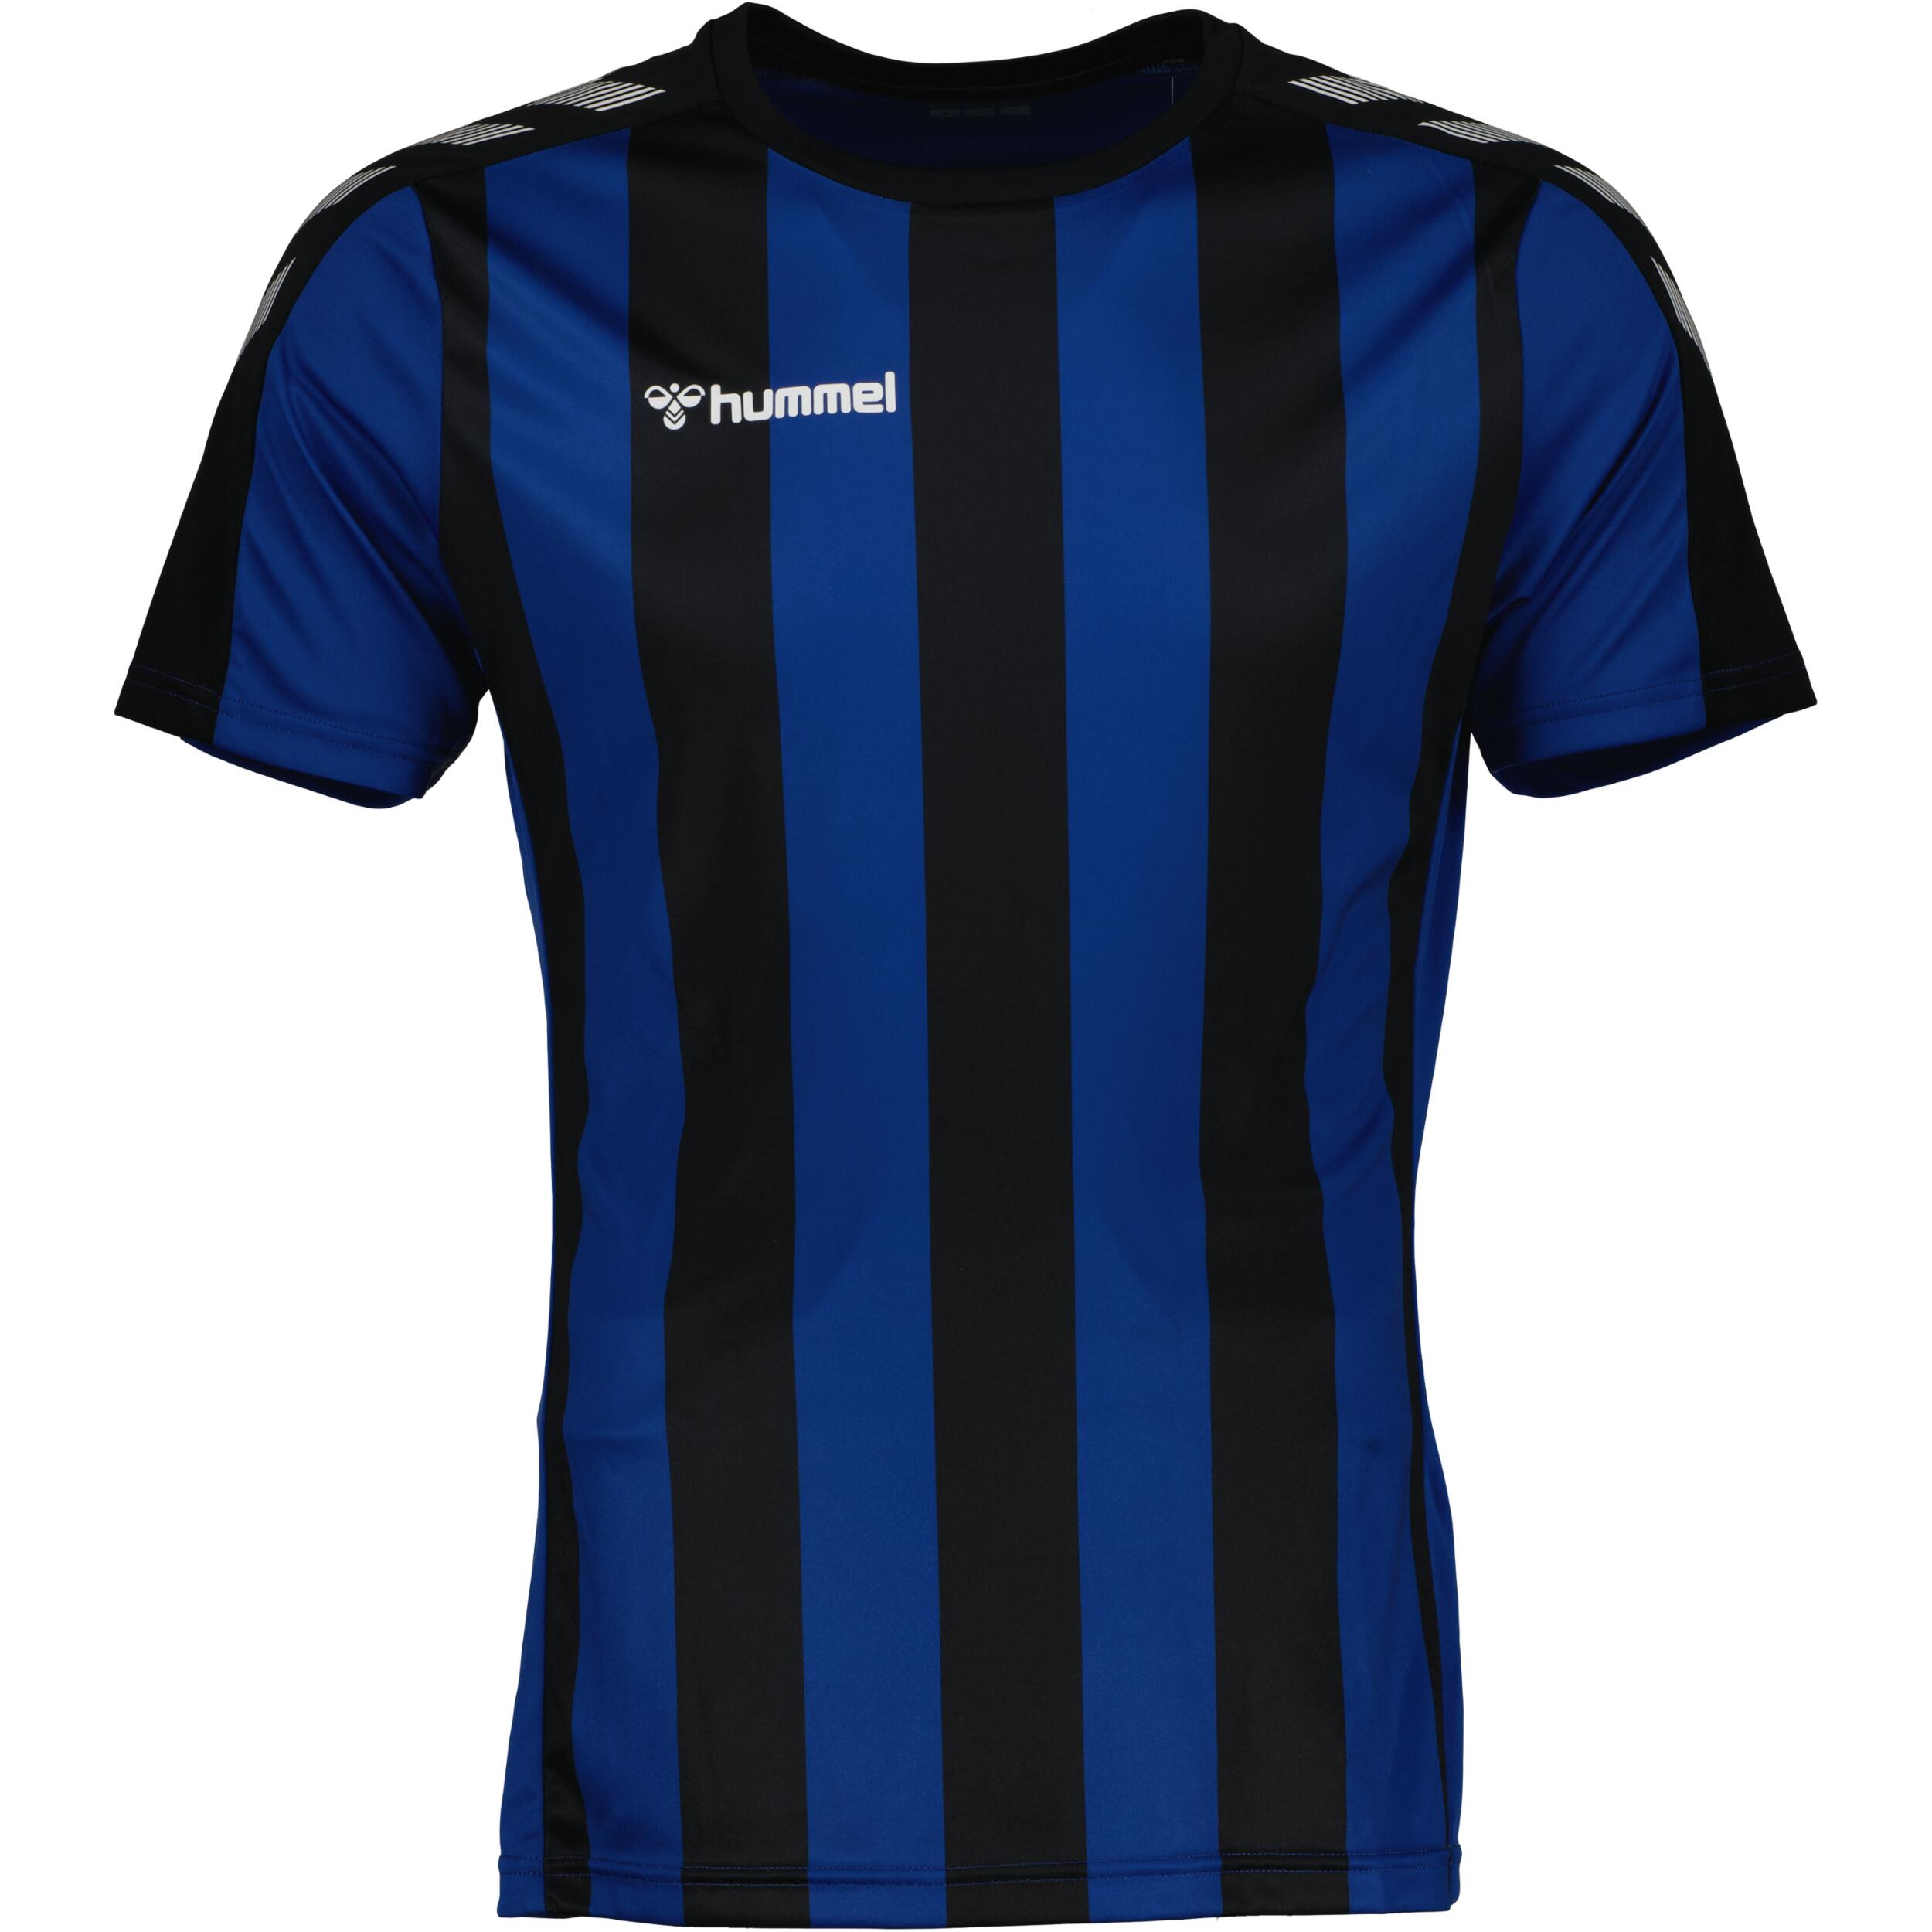 HUMMEL Stripe jersey for men, great for football,  in black/true blue